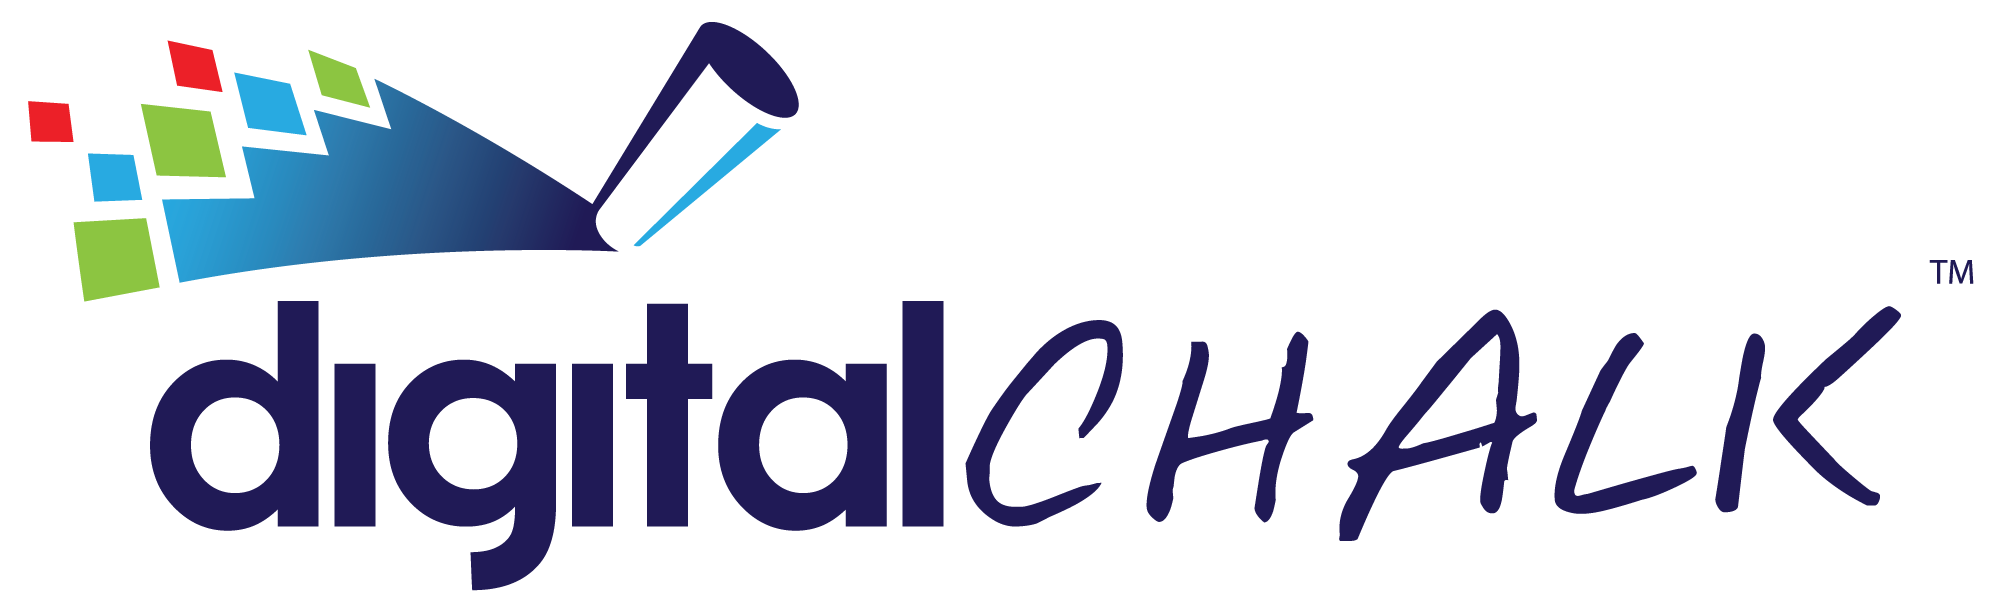 Digital chalk logo